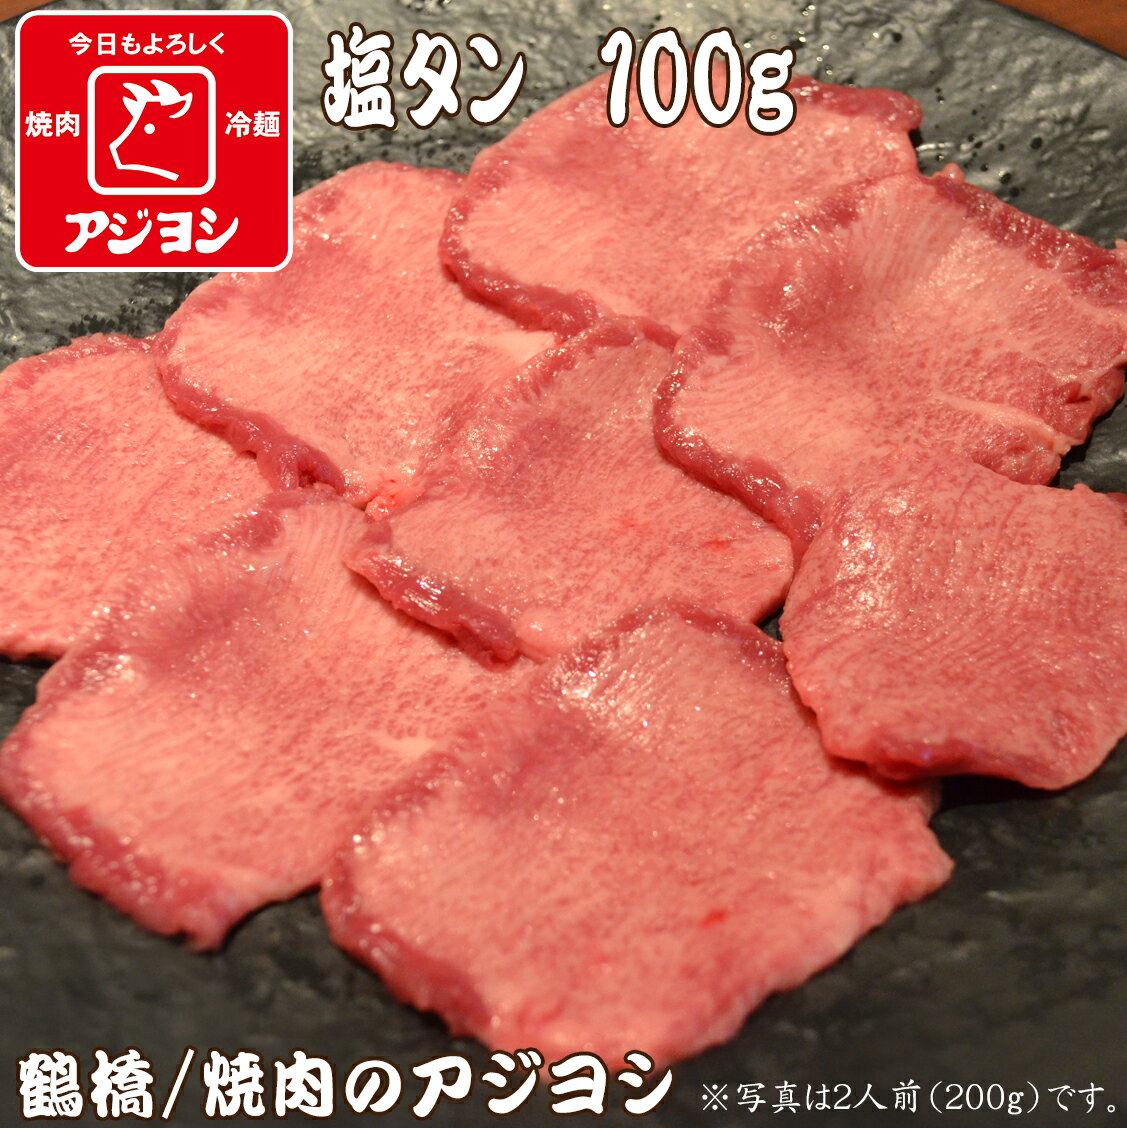 【鶴橋・焼肉のアジヨシ】牛肉 国産 牛塩タン100g